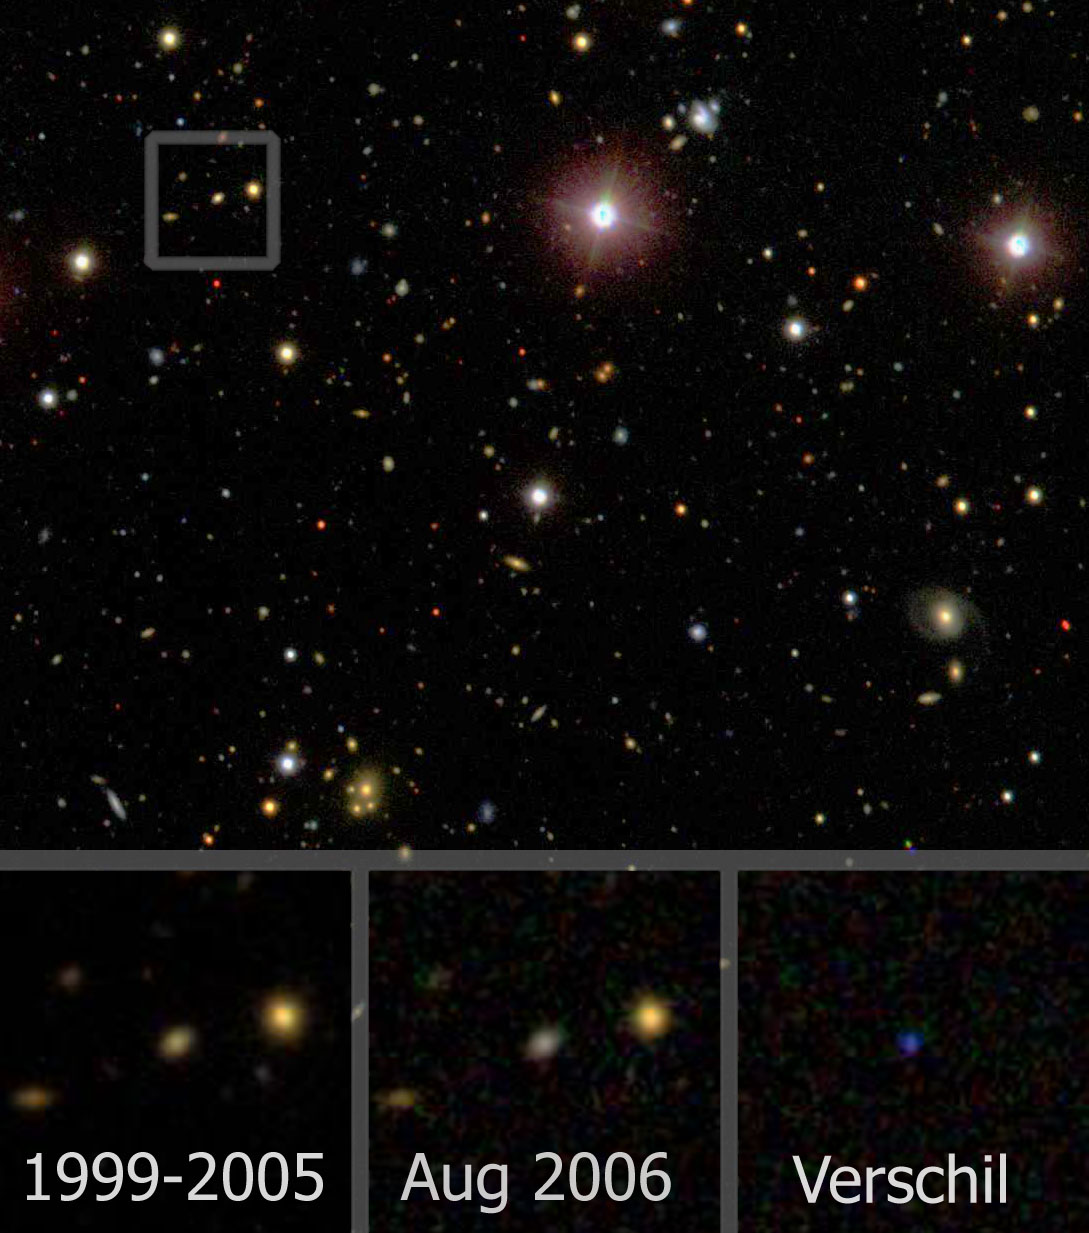 Beelden van de vernietiging van een ster door een zwart gat in de Sloan Digital Sky Survey (credit: SDSS, S. van Velzen). De drie plaatjes zijn een vergroting (1x1 boogminuut), gecentreerd op het melkwegstelsel waarin de vernietiging plaatsvond. Van links